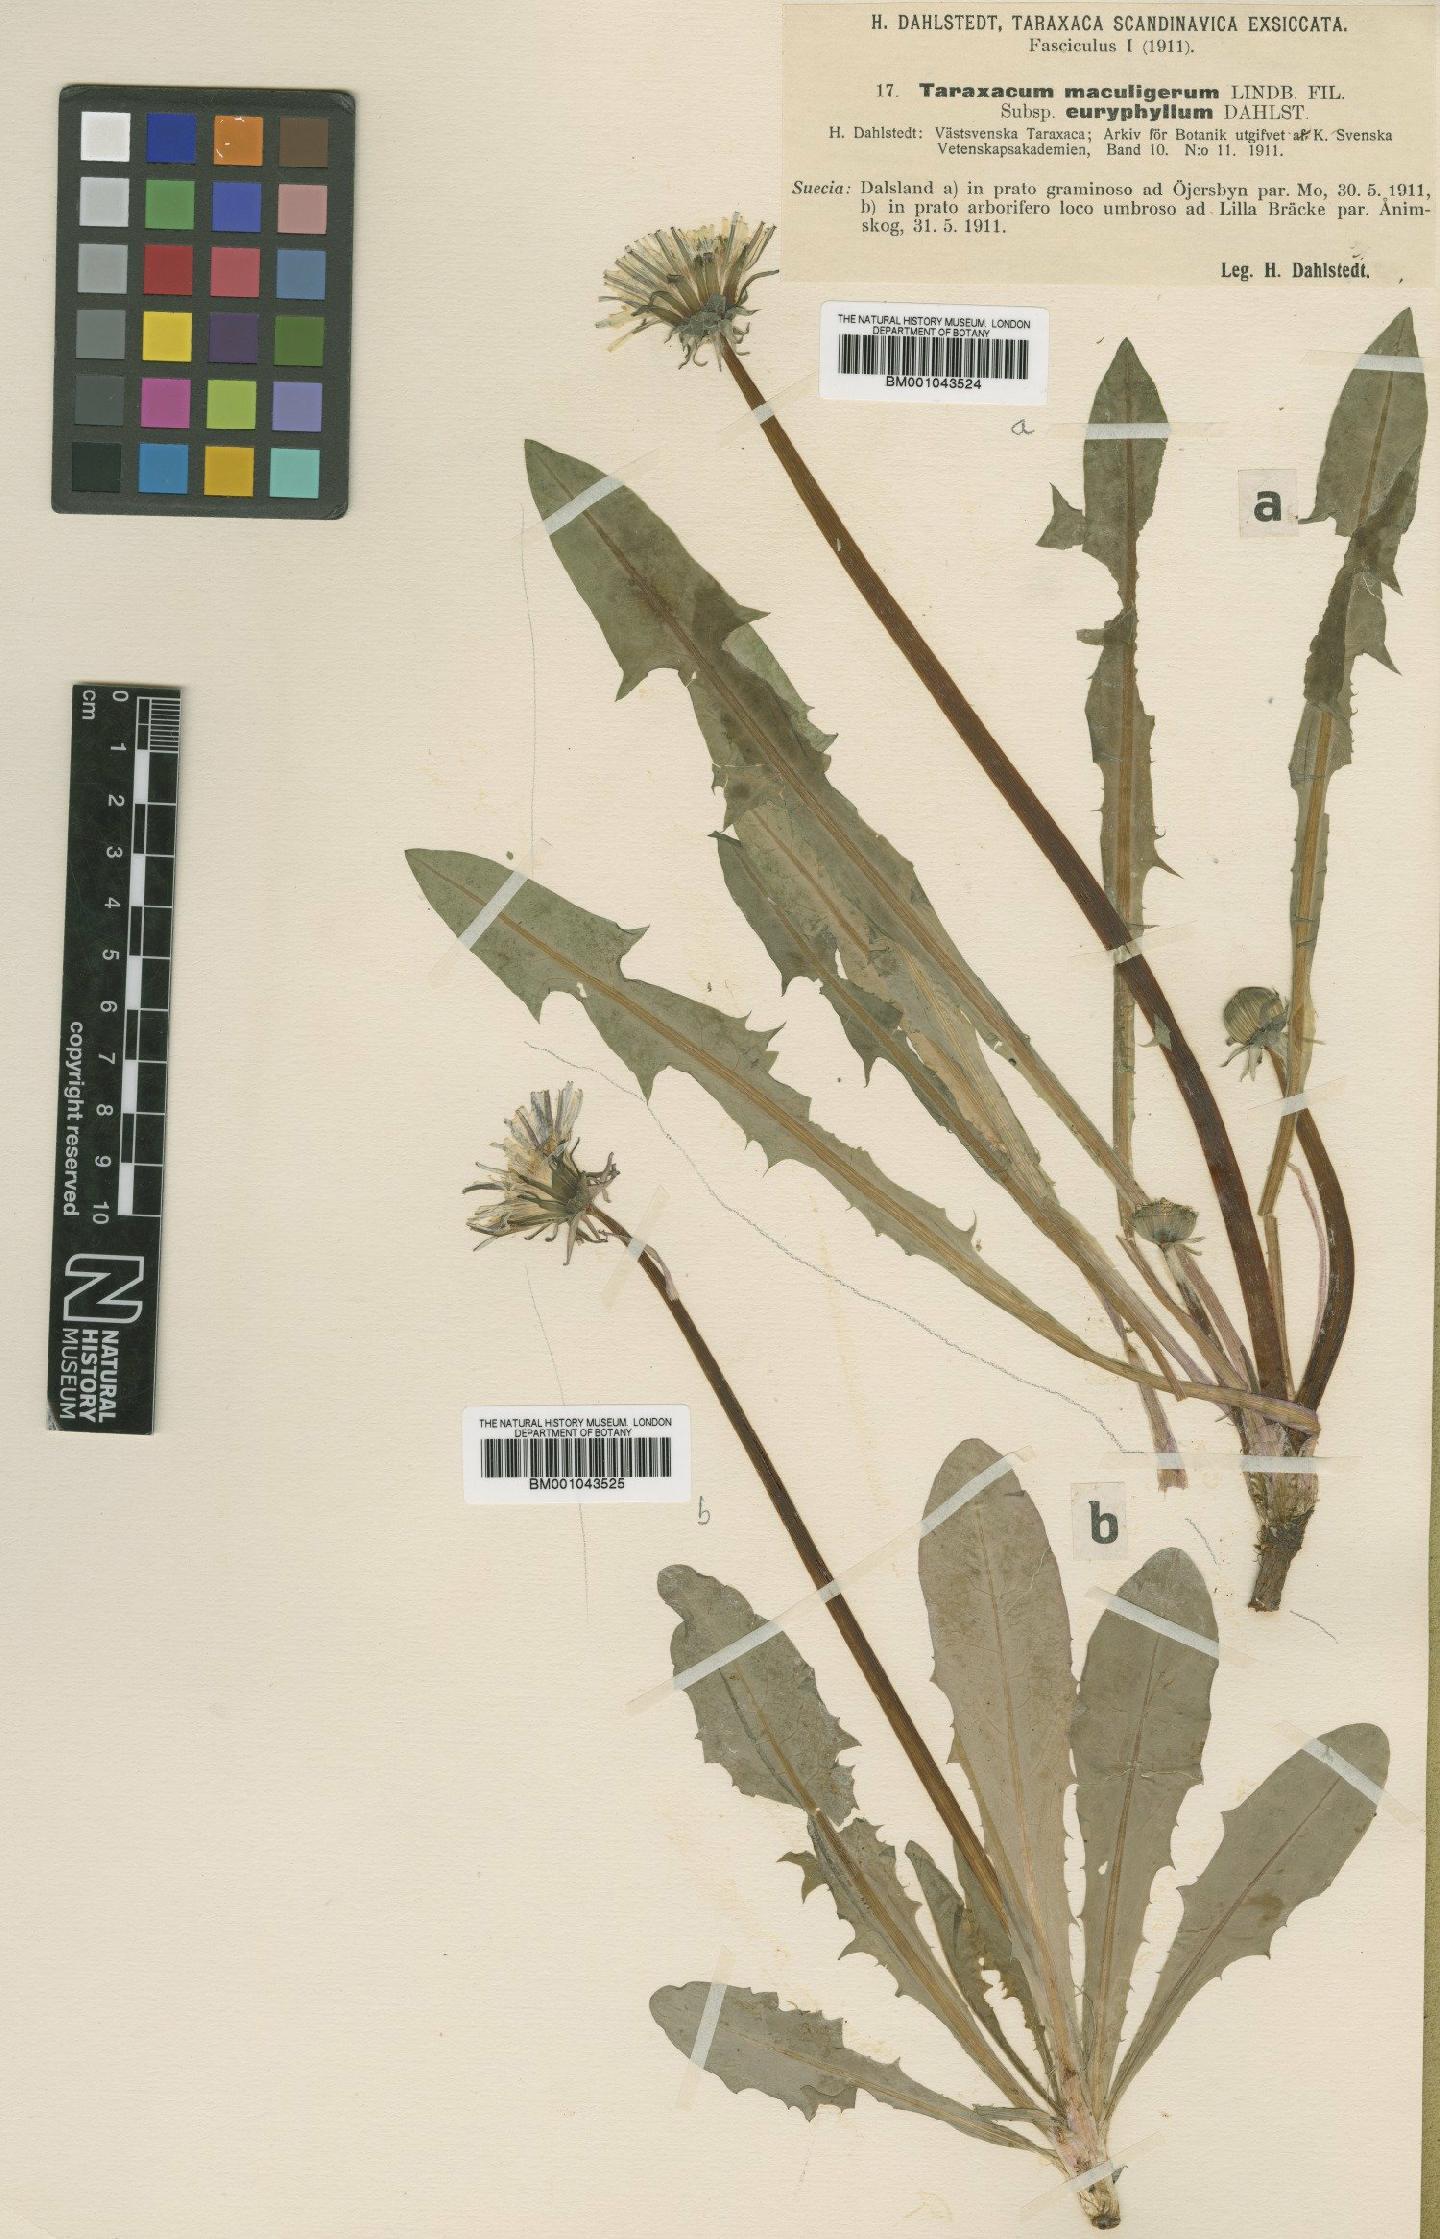 To NHMUK collection (Taraxacum maculigerum subsp. euryphyllum Dahlst.; Type; NHMUK:ecatalogue:1999312)